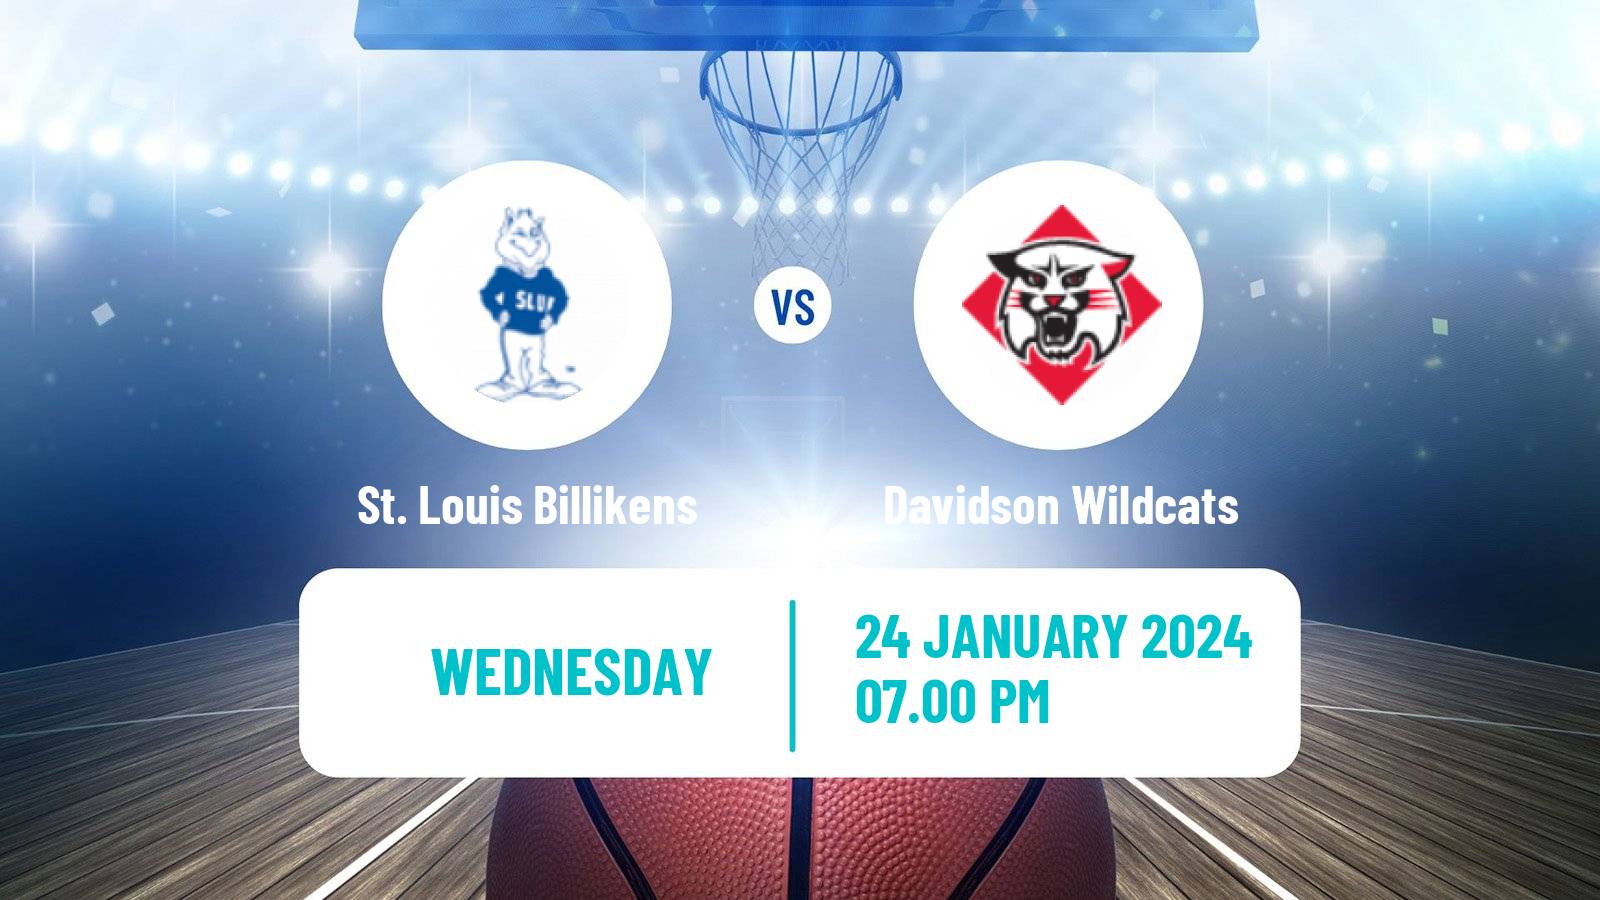 Basketball NCAA College Basketball St. Louis Billikens - Davidson Wildcats